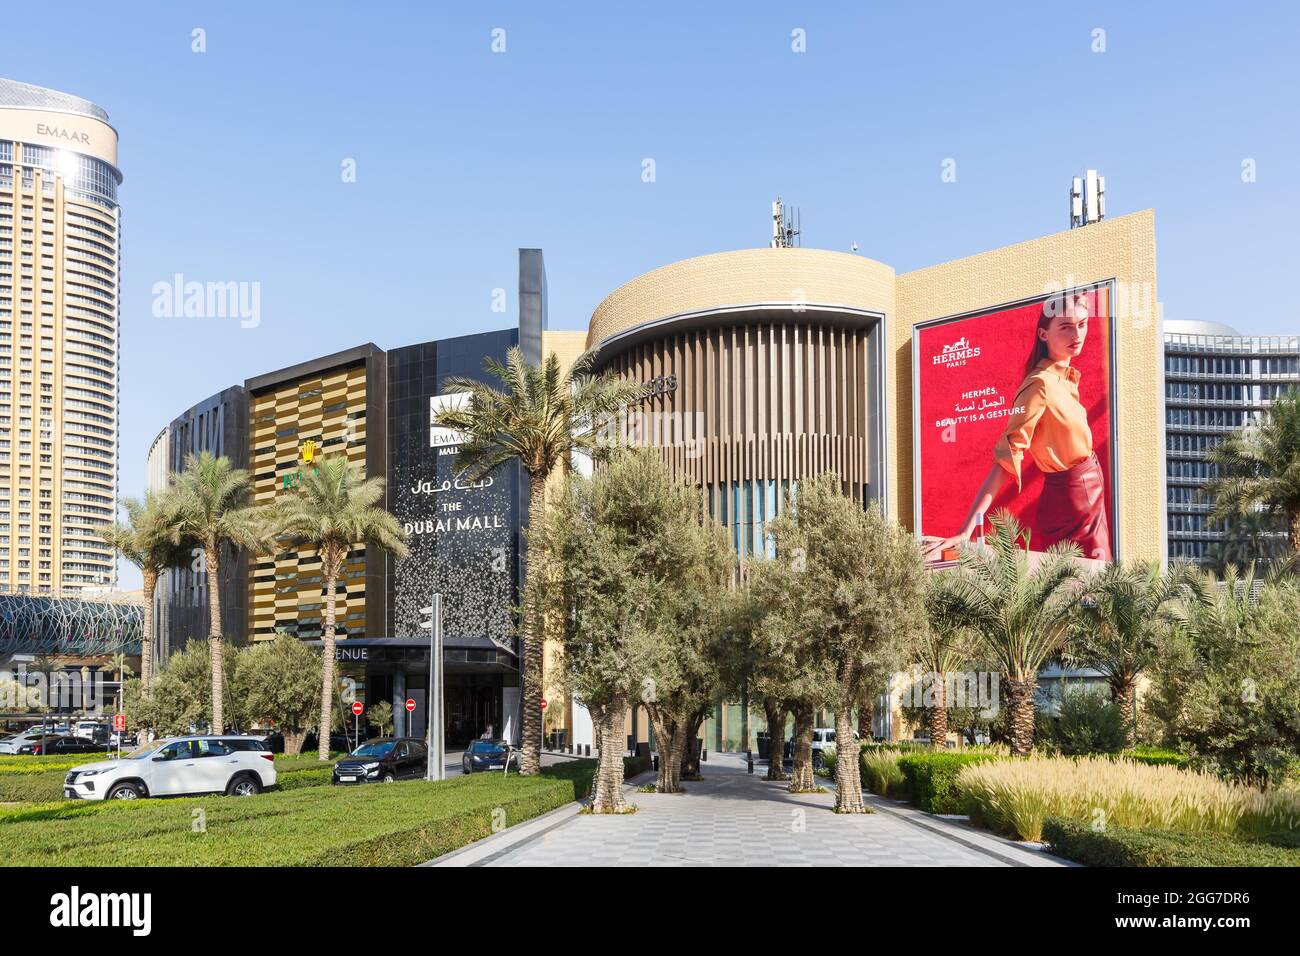 Dubai, United Arab Emirates - May 27, 2021: Dubai Mall Luxury Shopping Center in Dubai, United Arab Emirates. Stock Photo